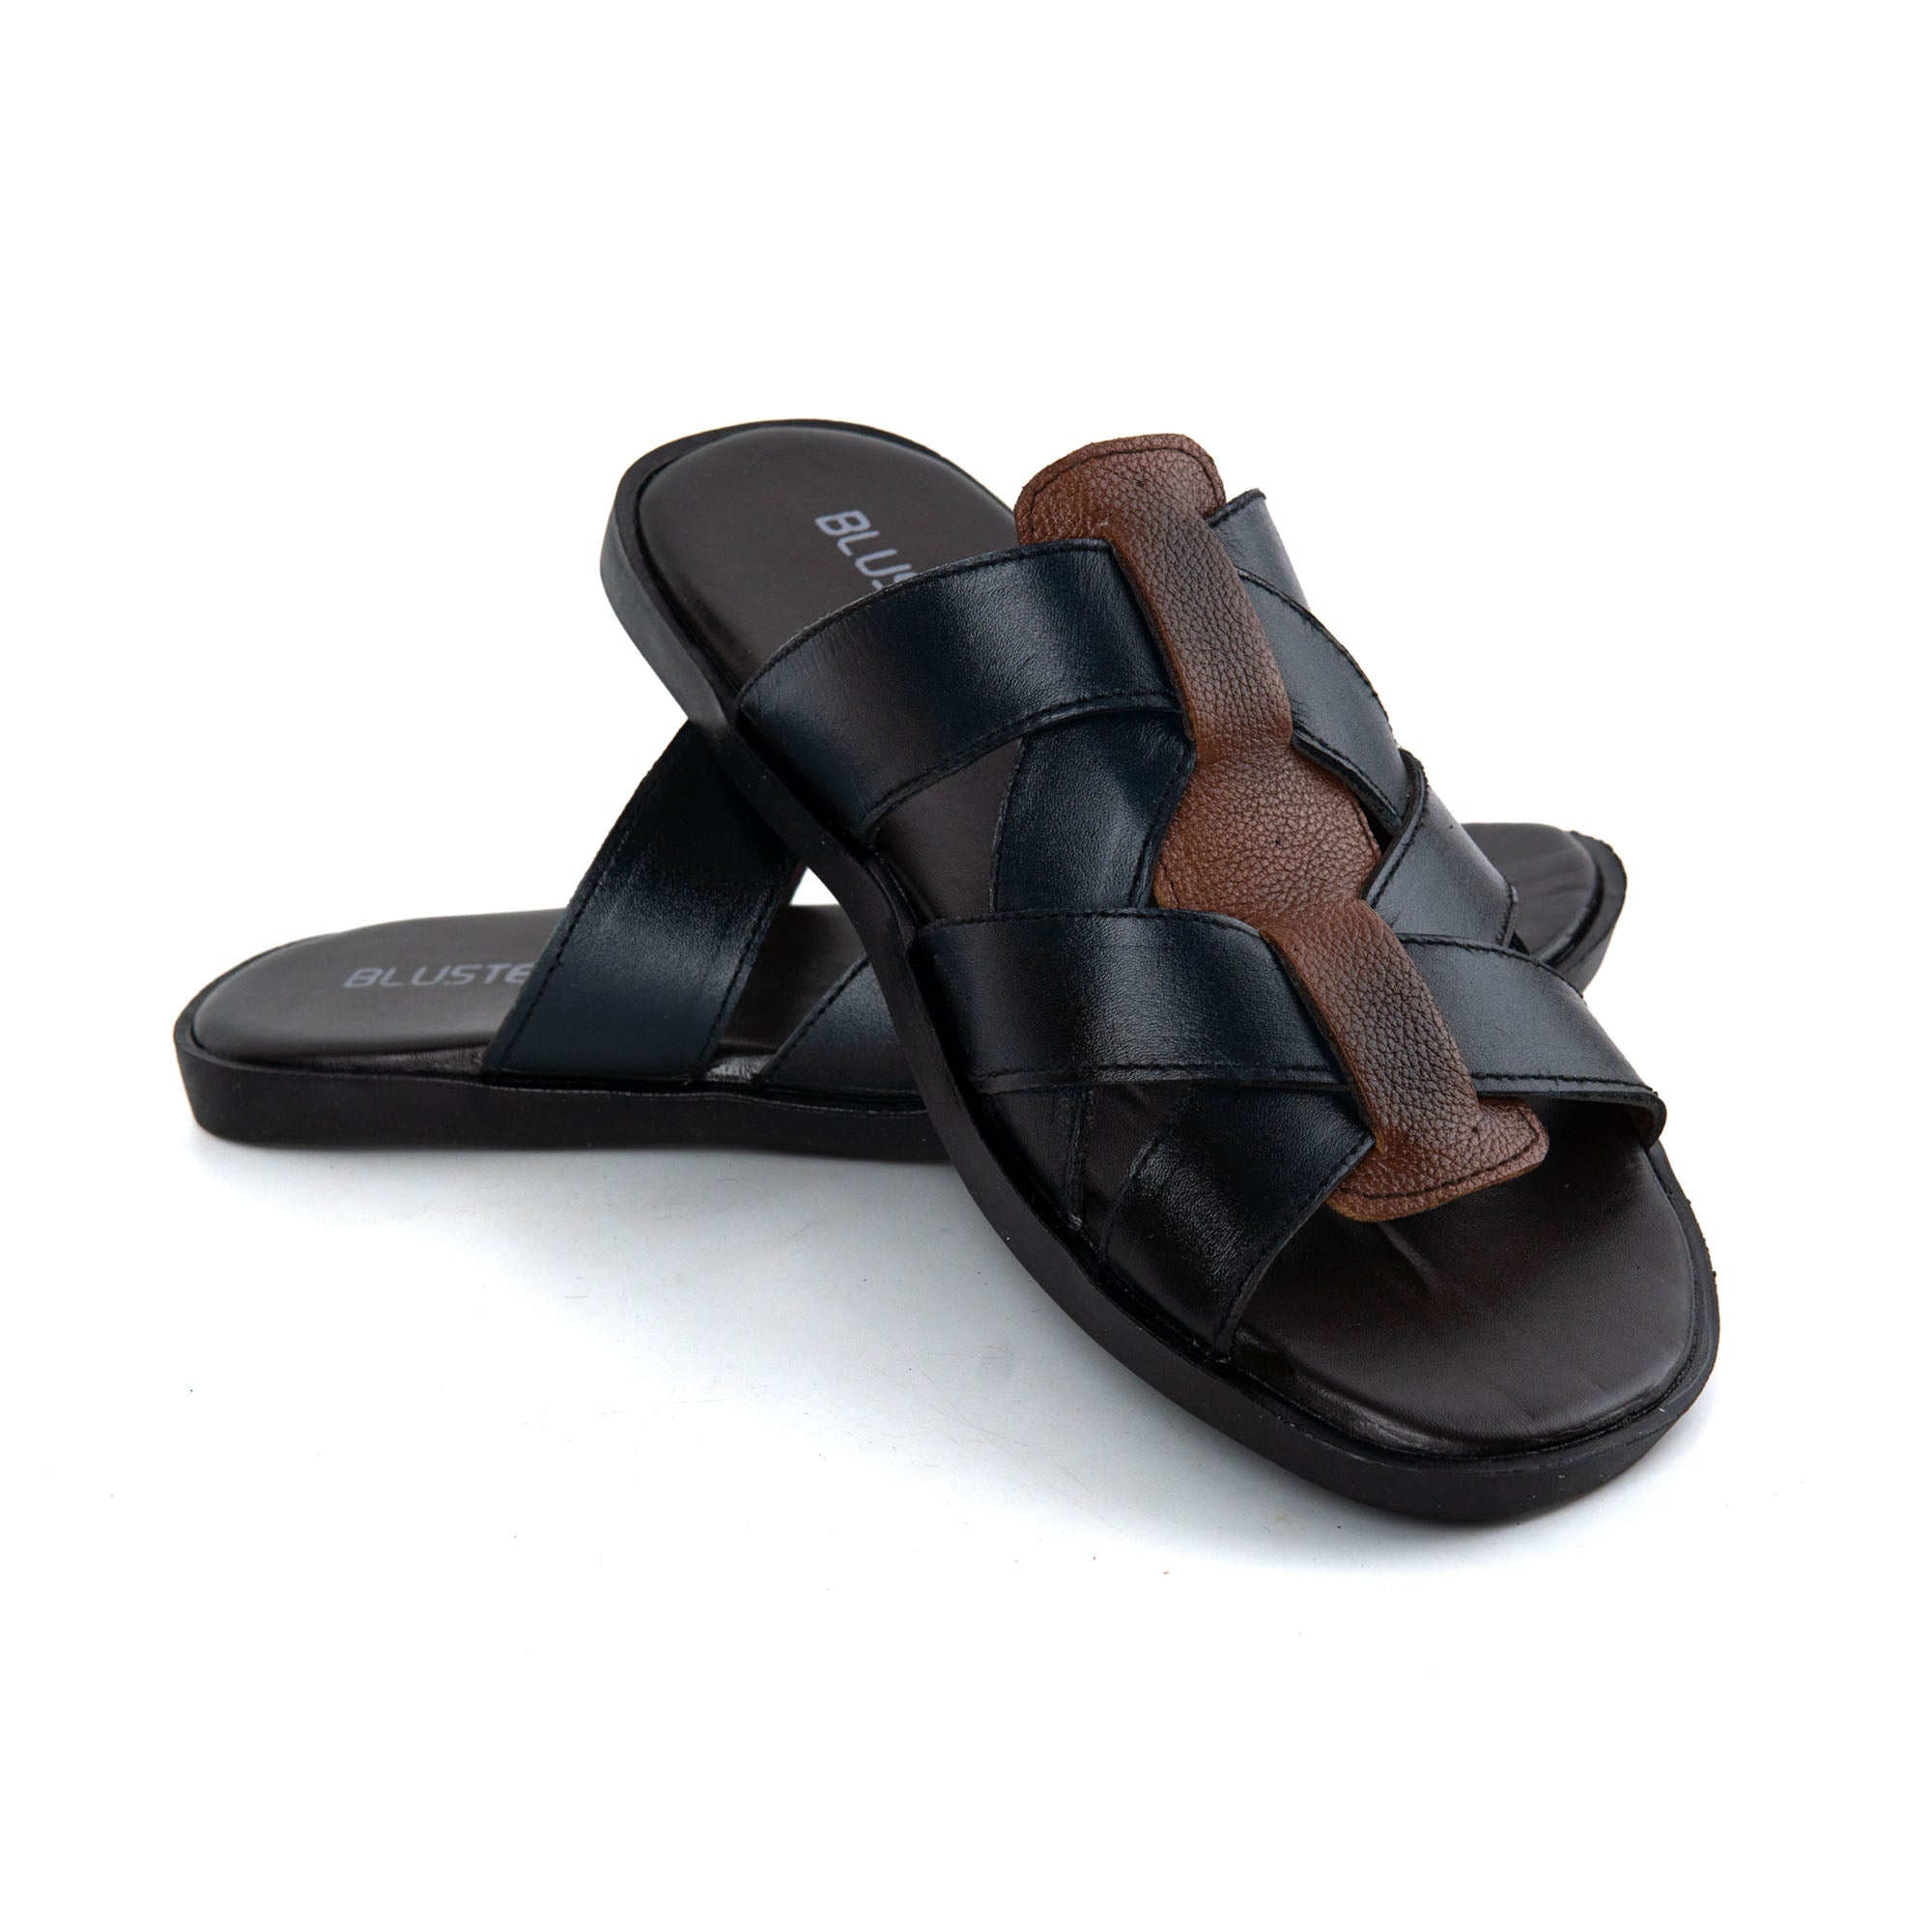 15 Bareskin Slide Slippers ideas | velvet slippers, slide slippers, slippers